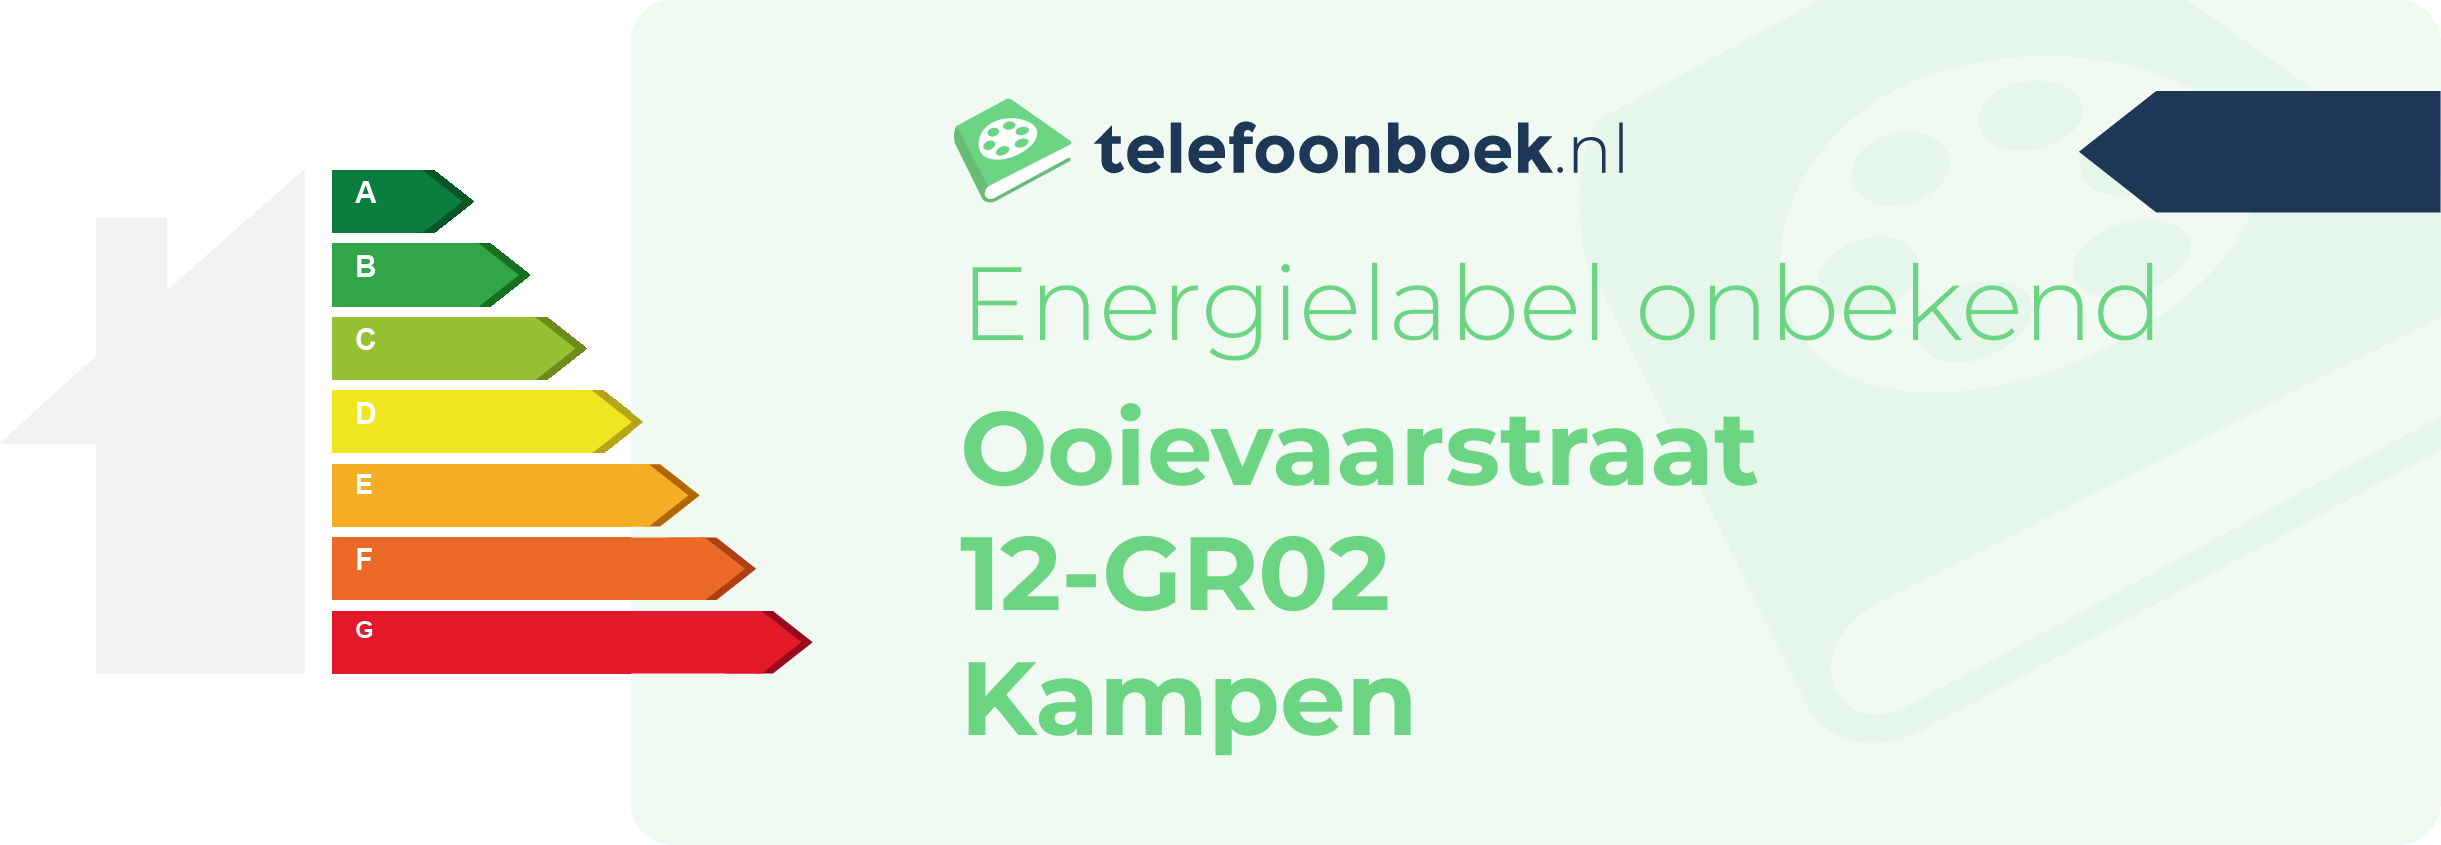 Energielabel Ooievaarstraat 12-GR02 Kampen